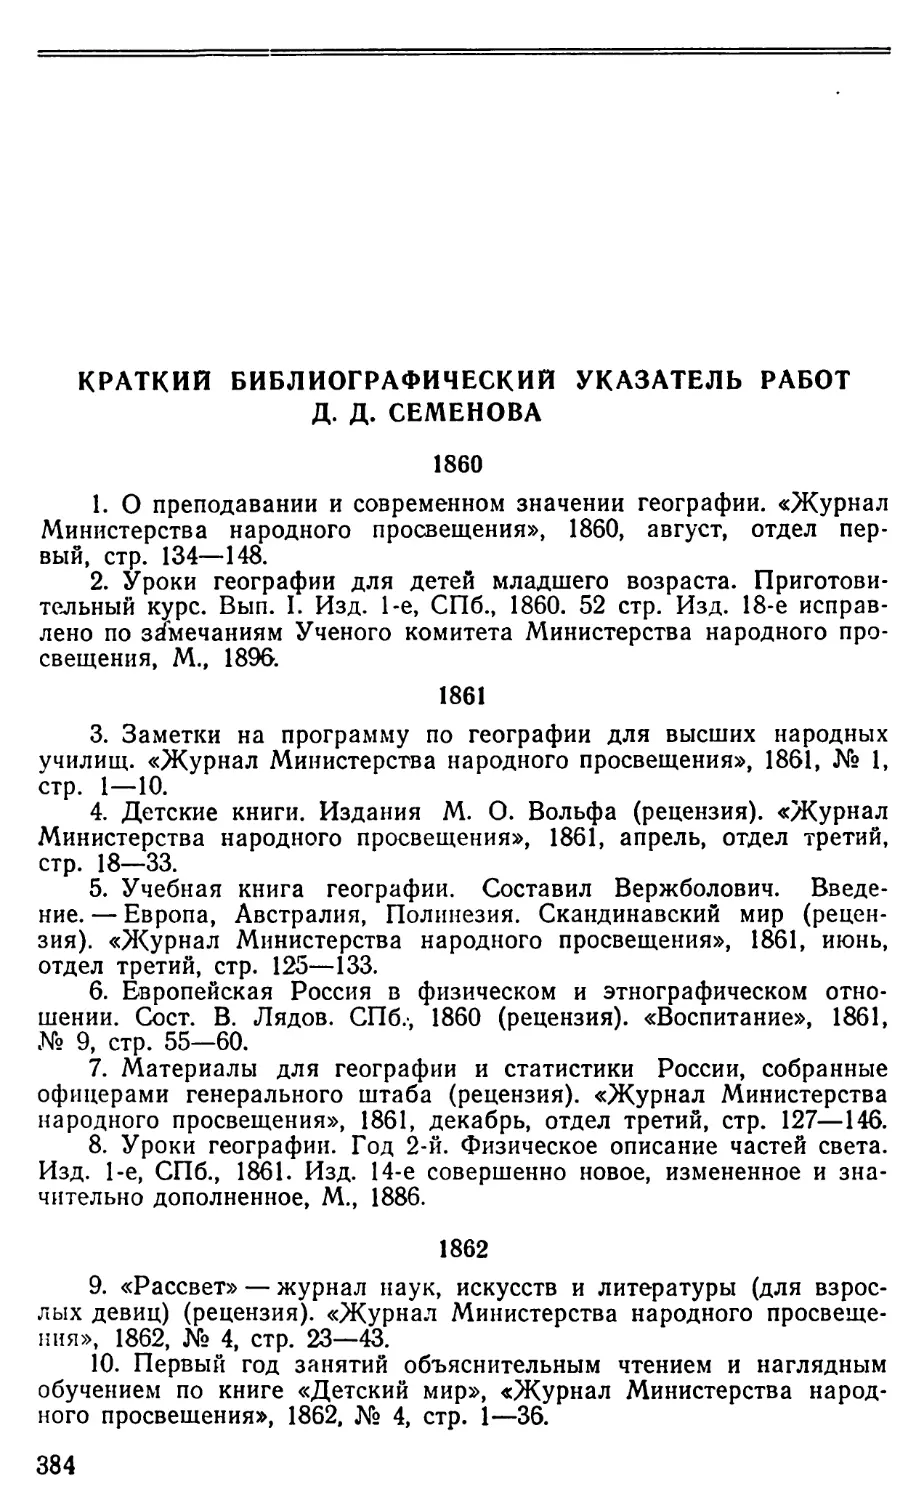 Краткий библиографический указатель работ Д.Д. Семенова